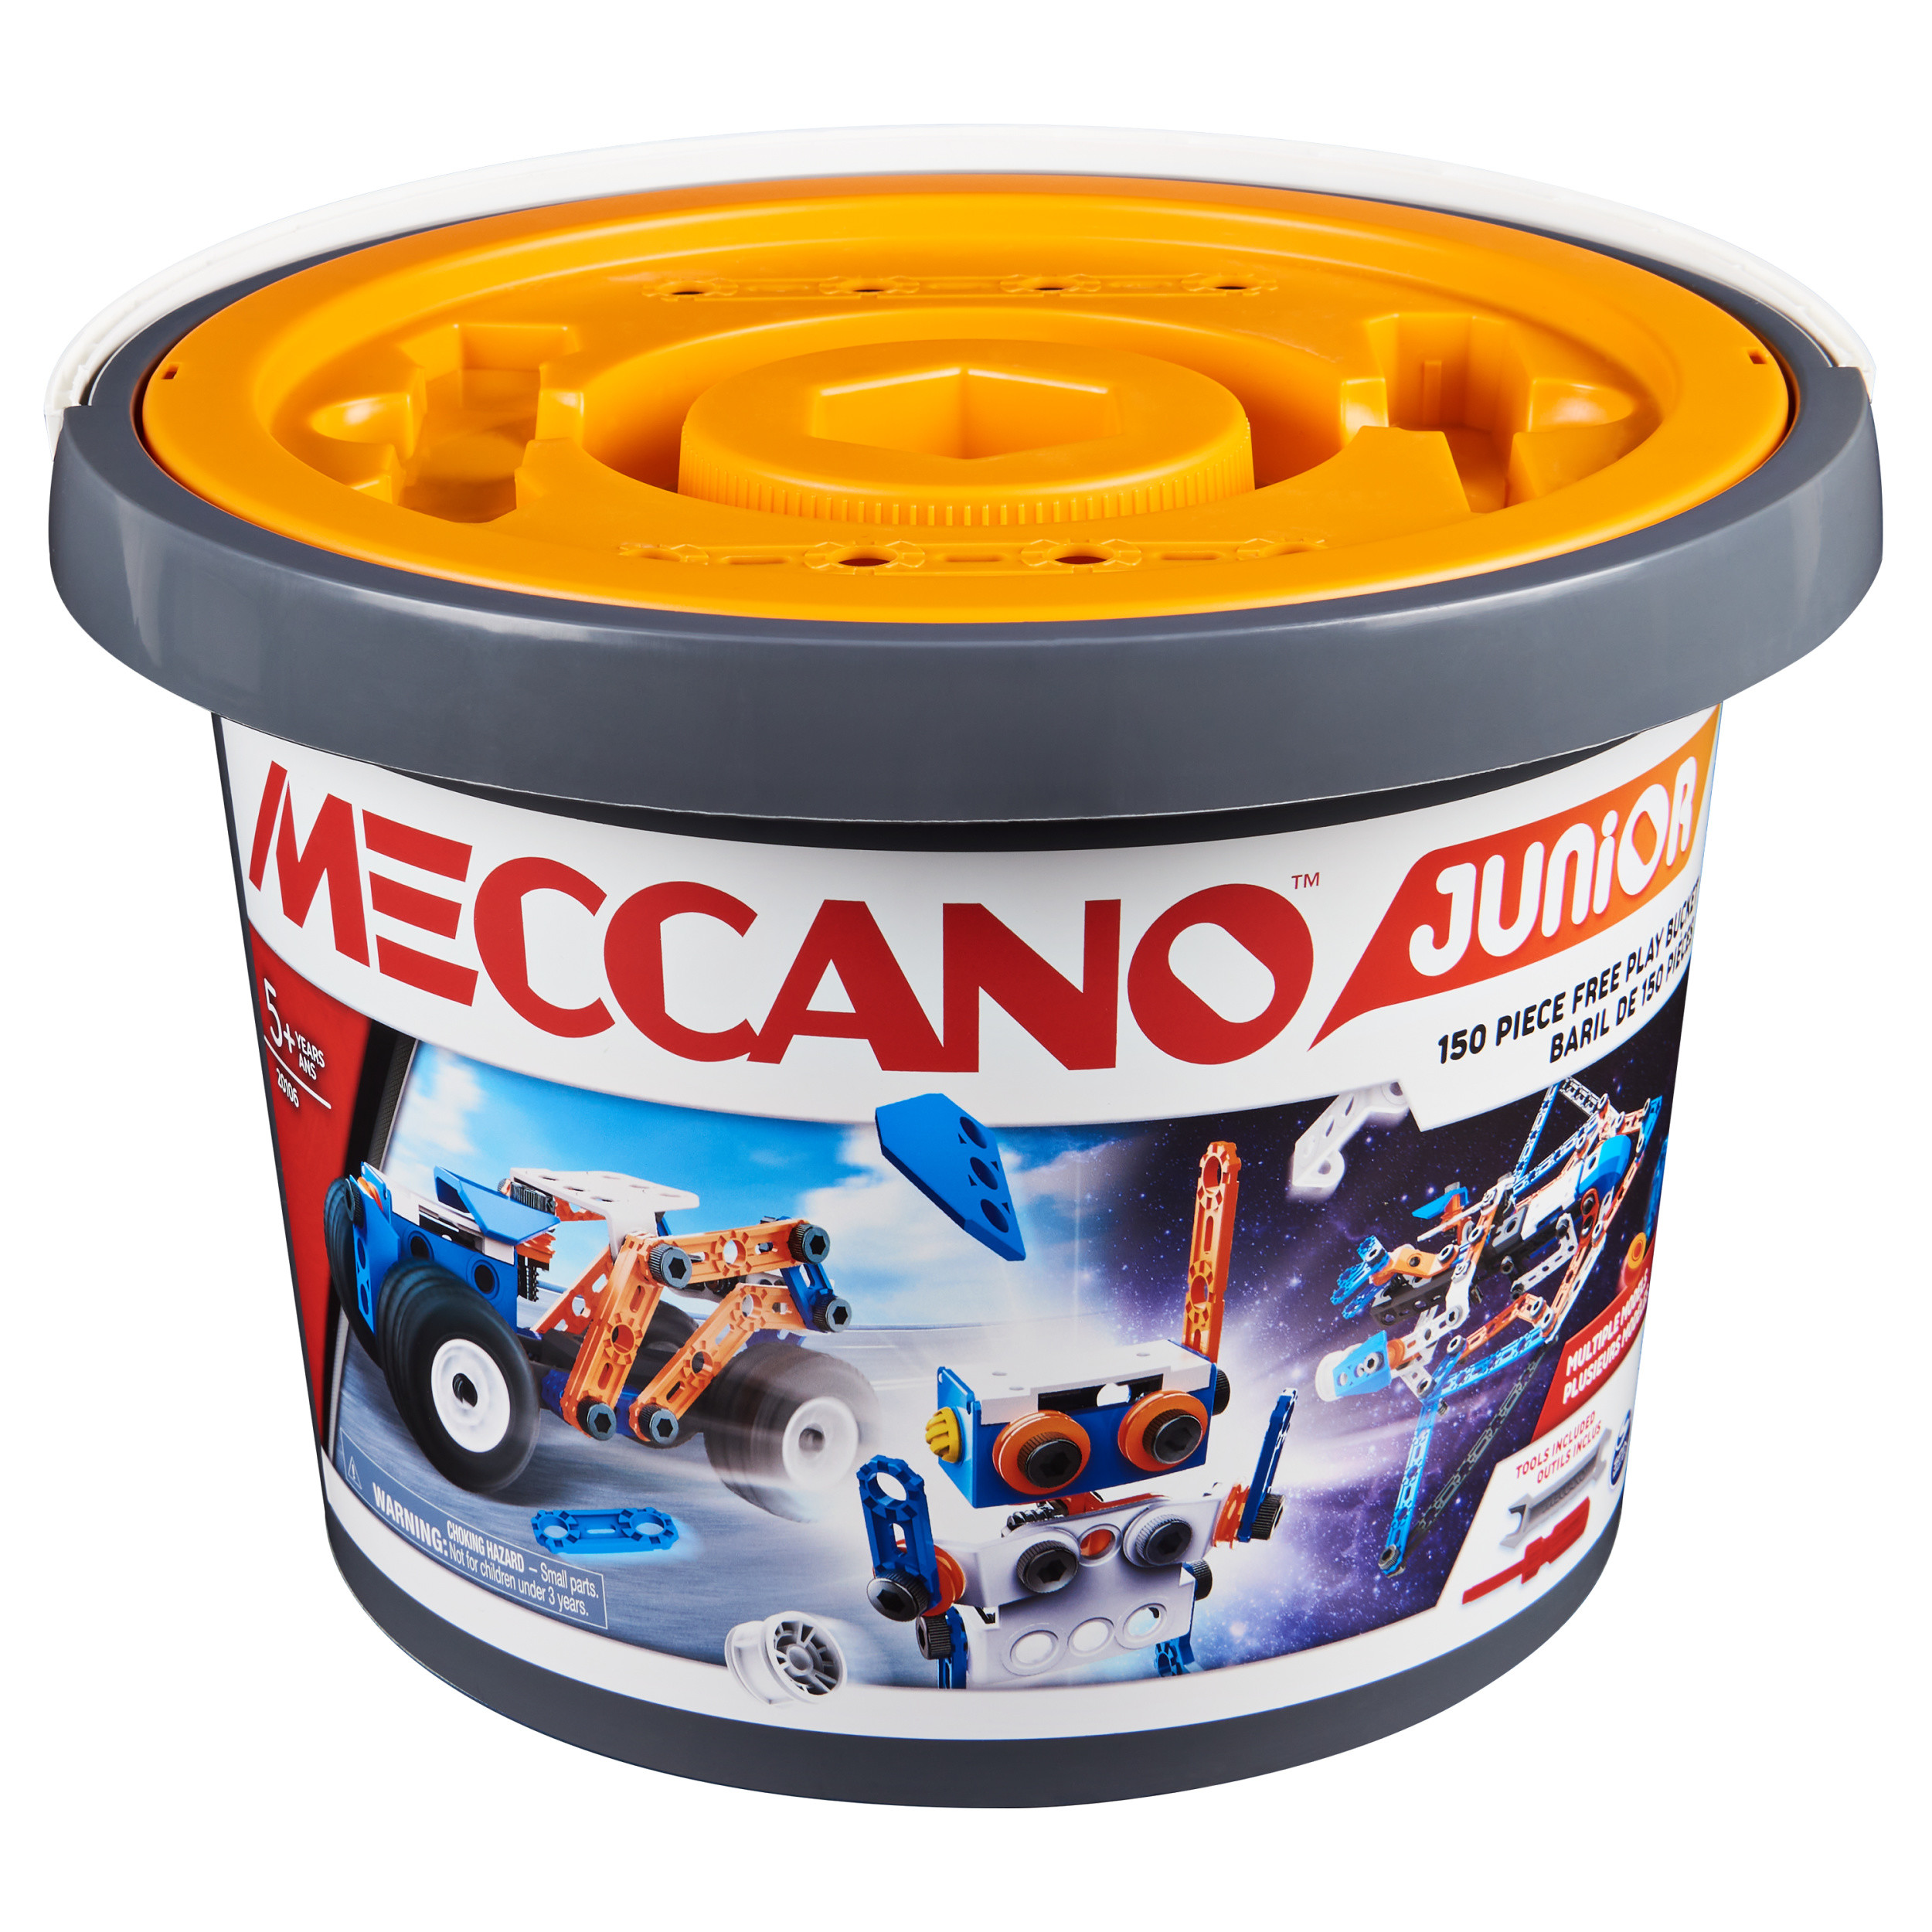 Meccano Junior in a bucket (150 parts)